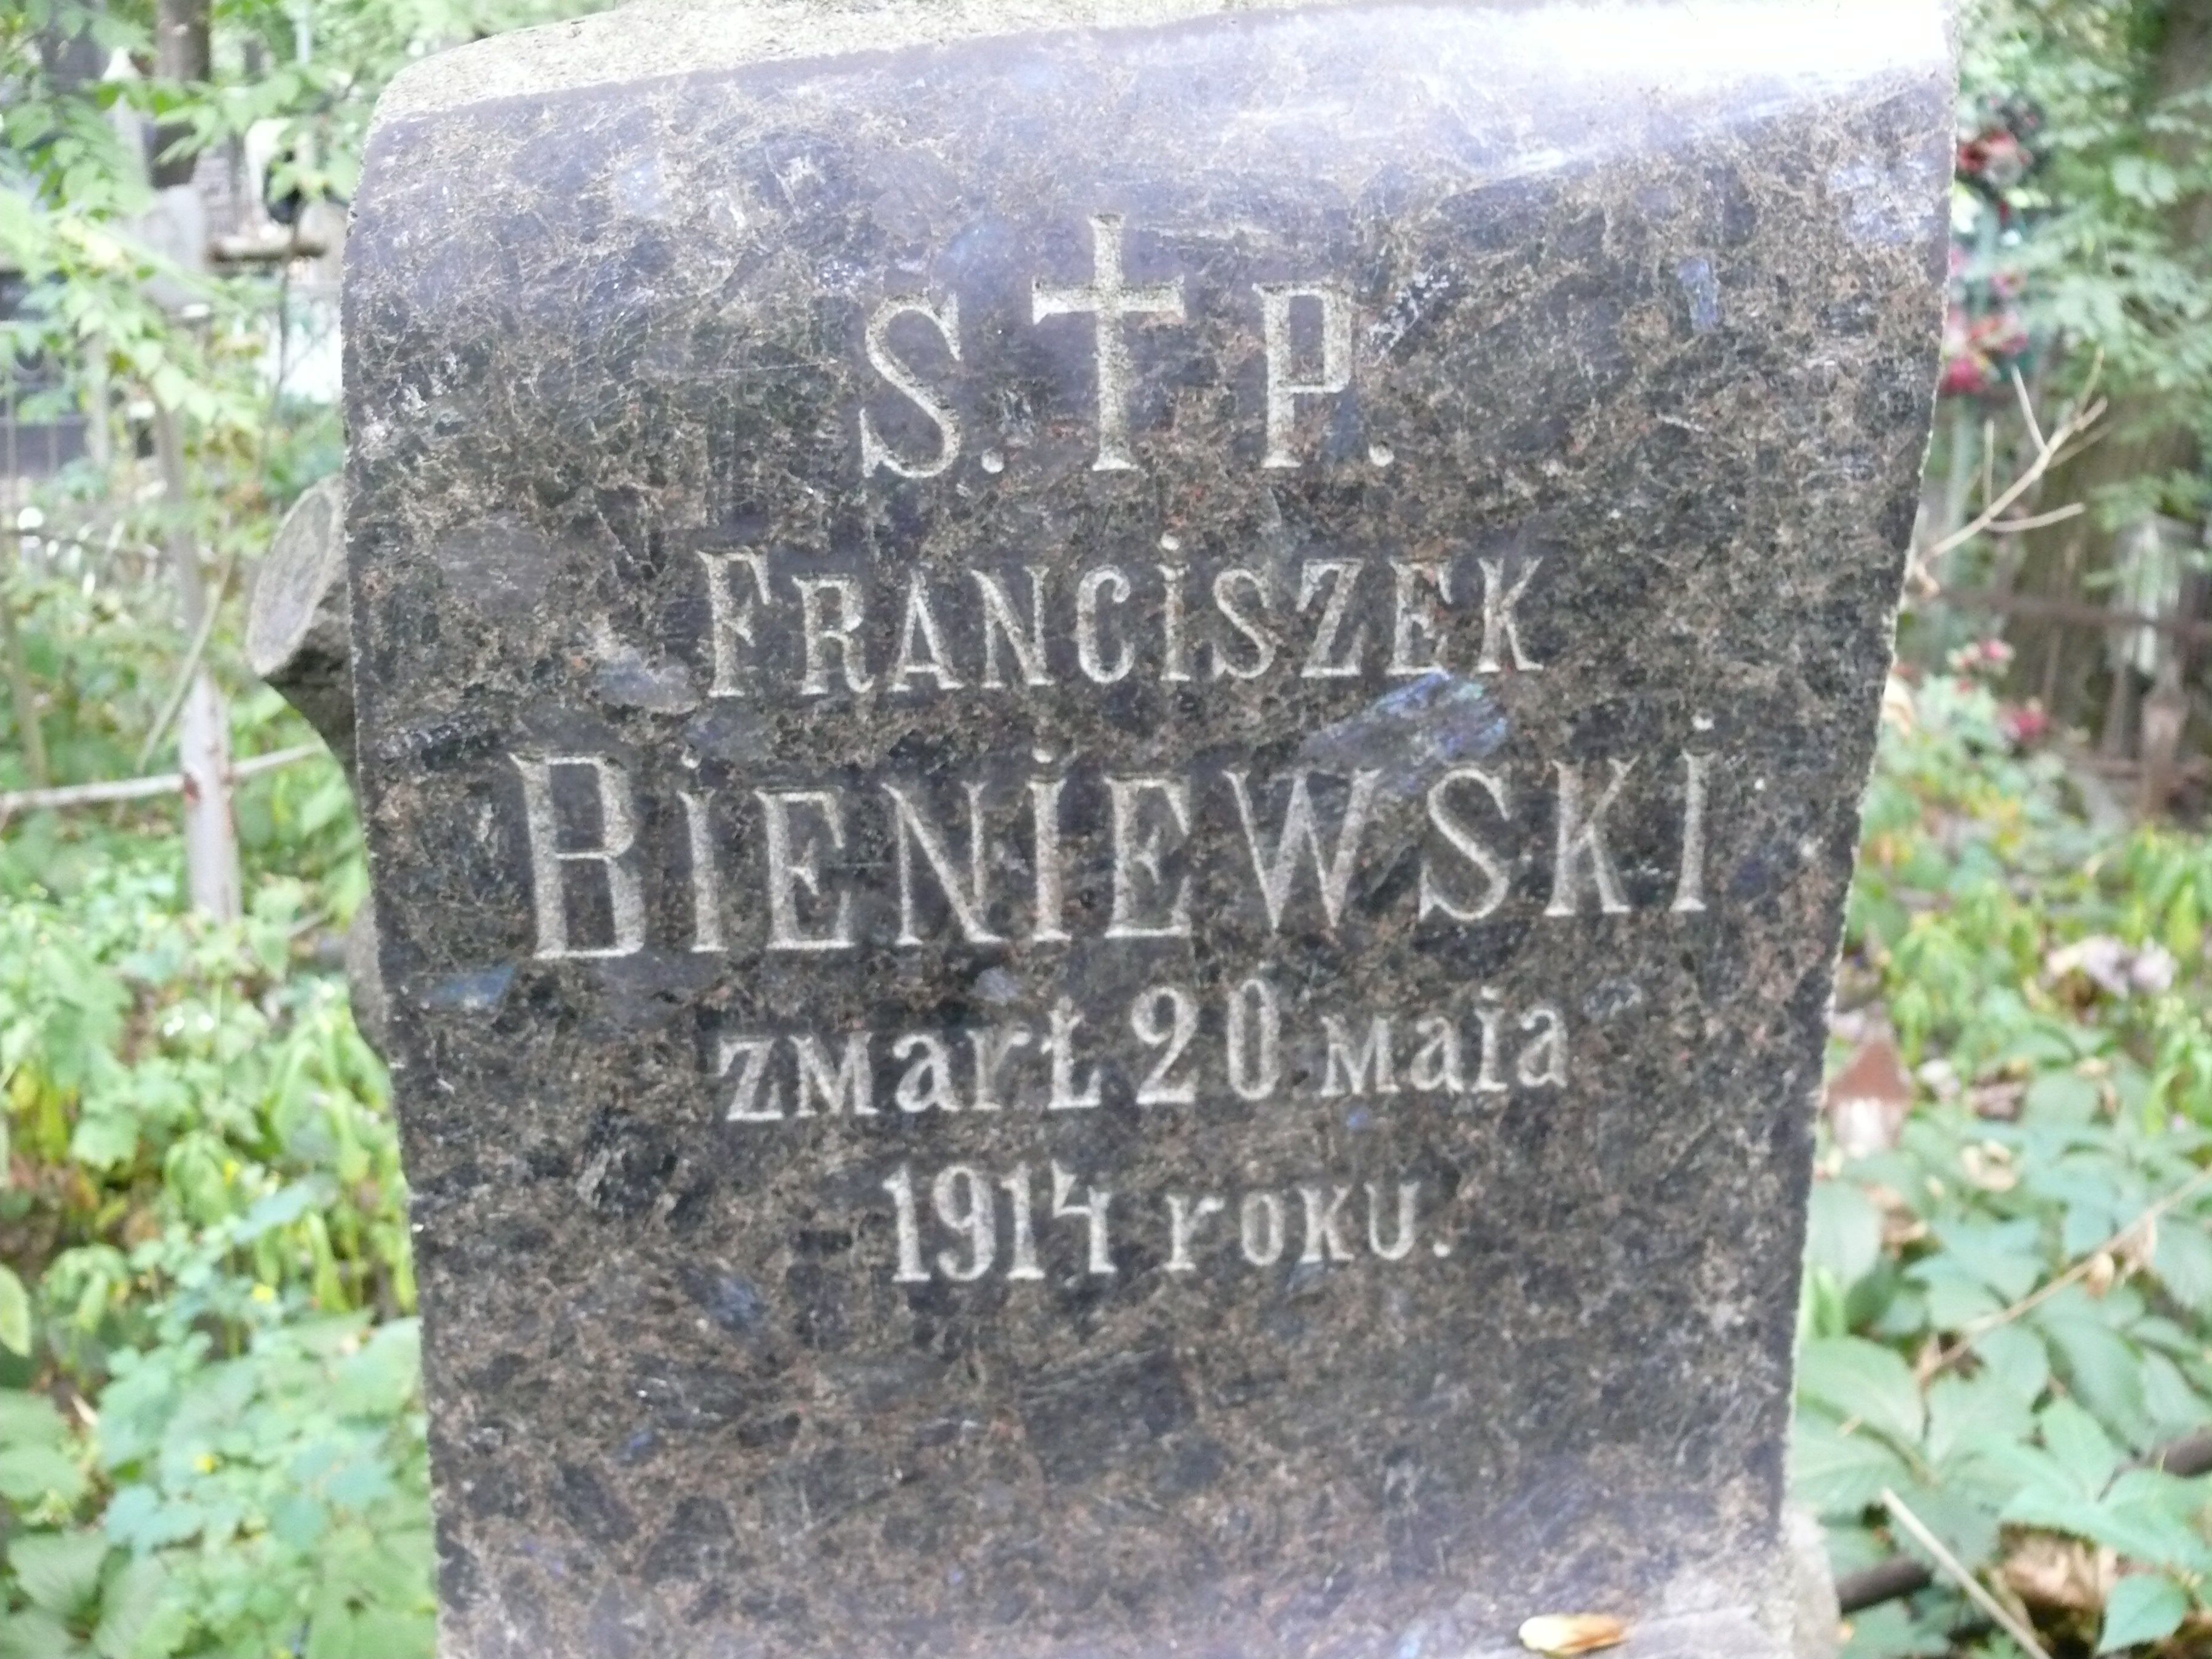 Napis z nagrobka Franciszka Bieniewskiego